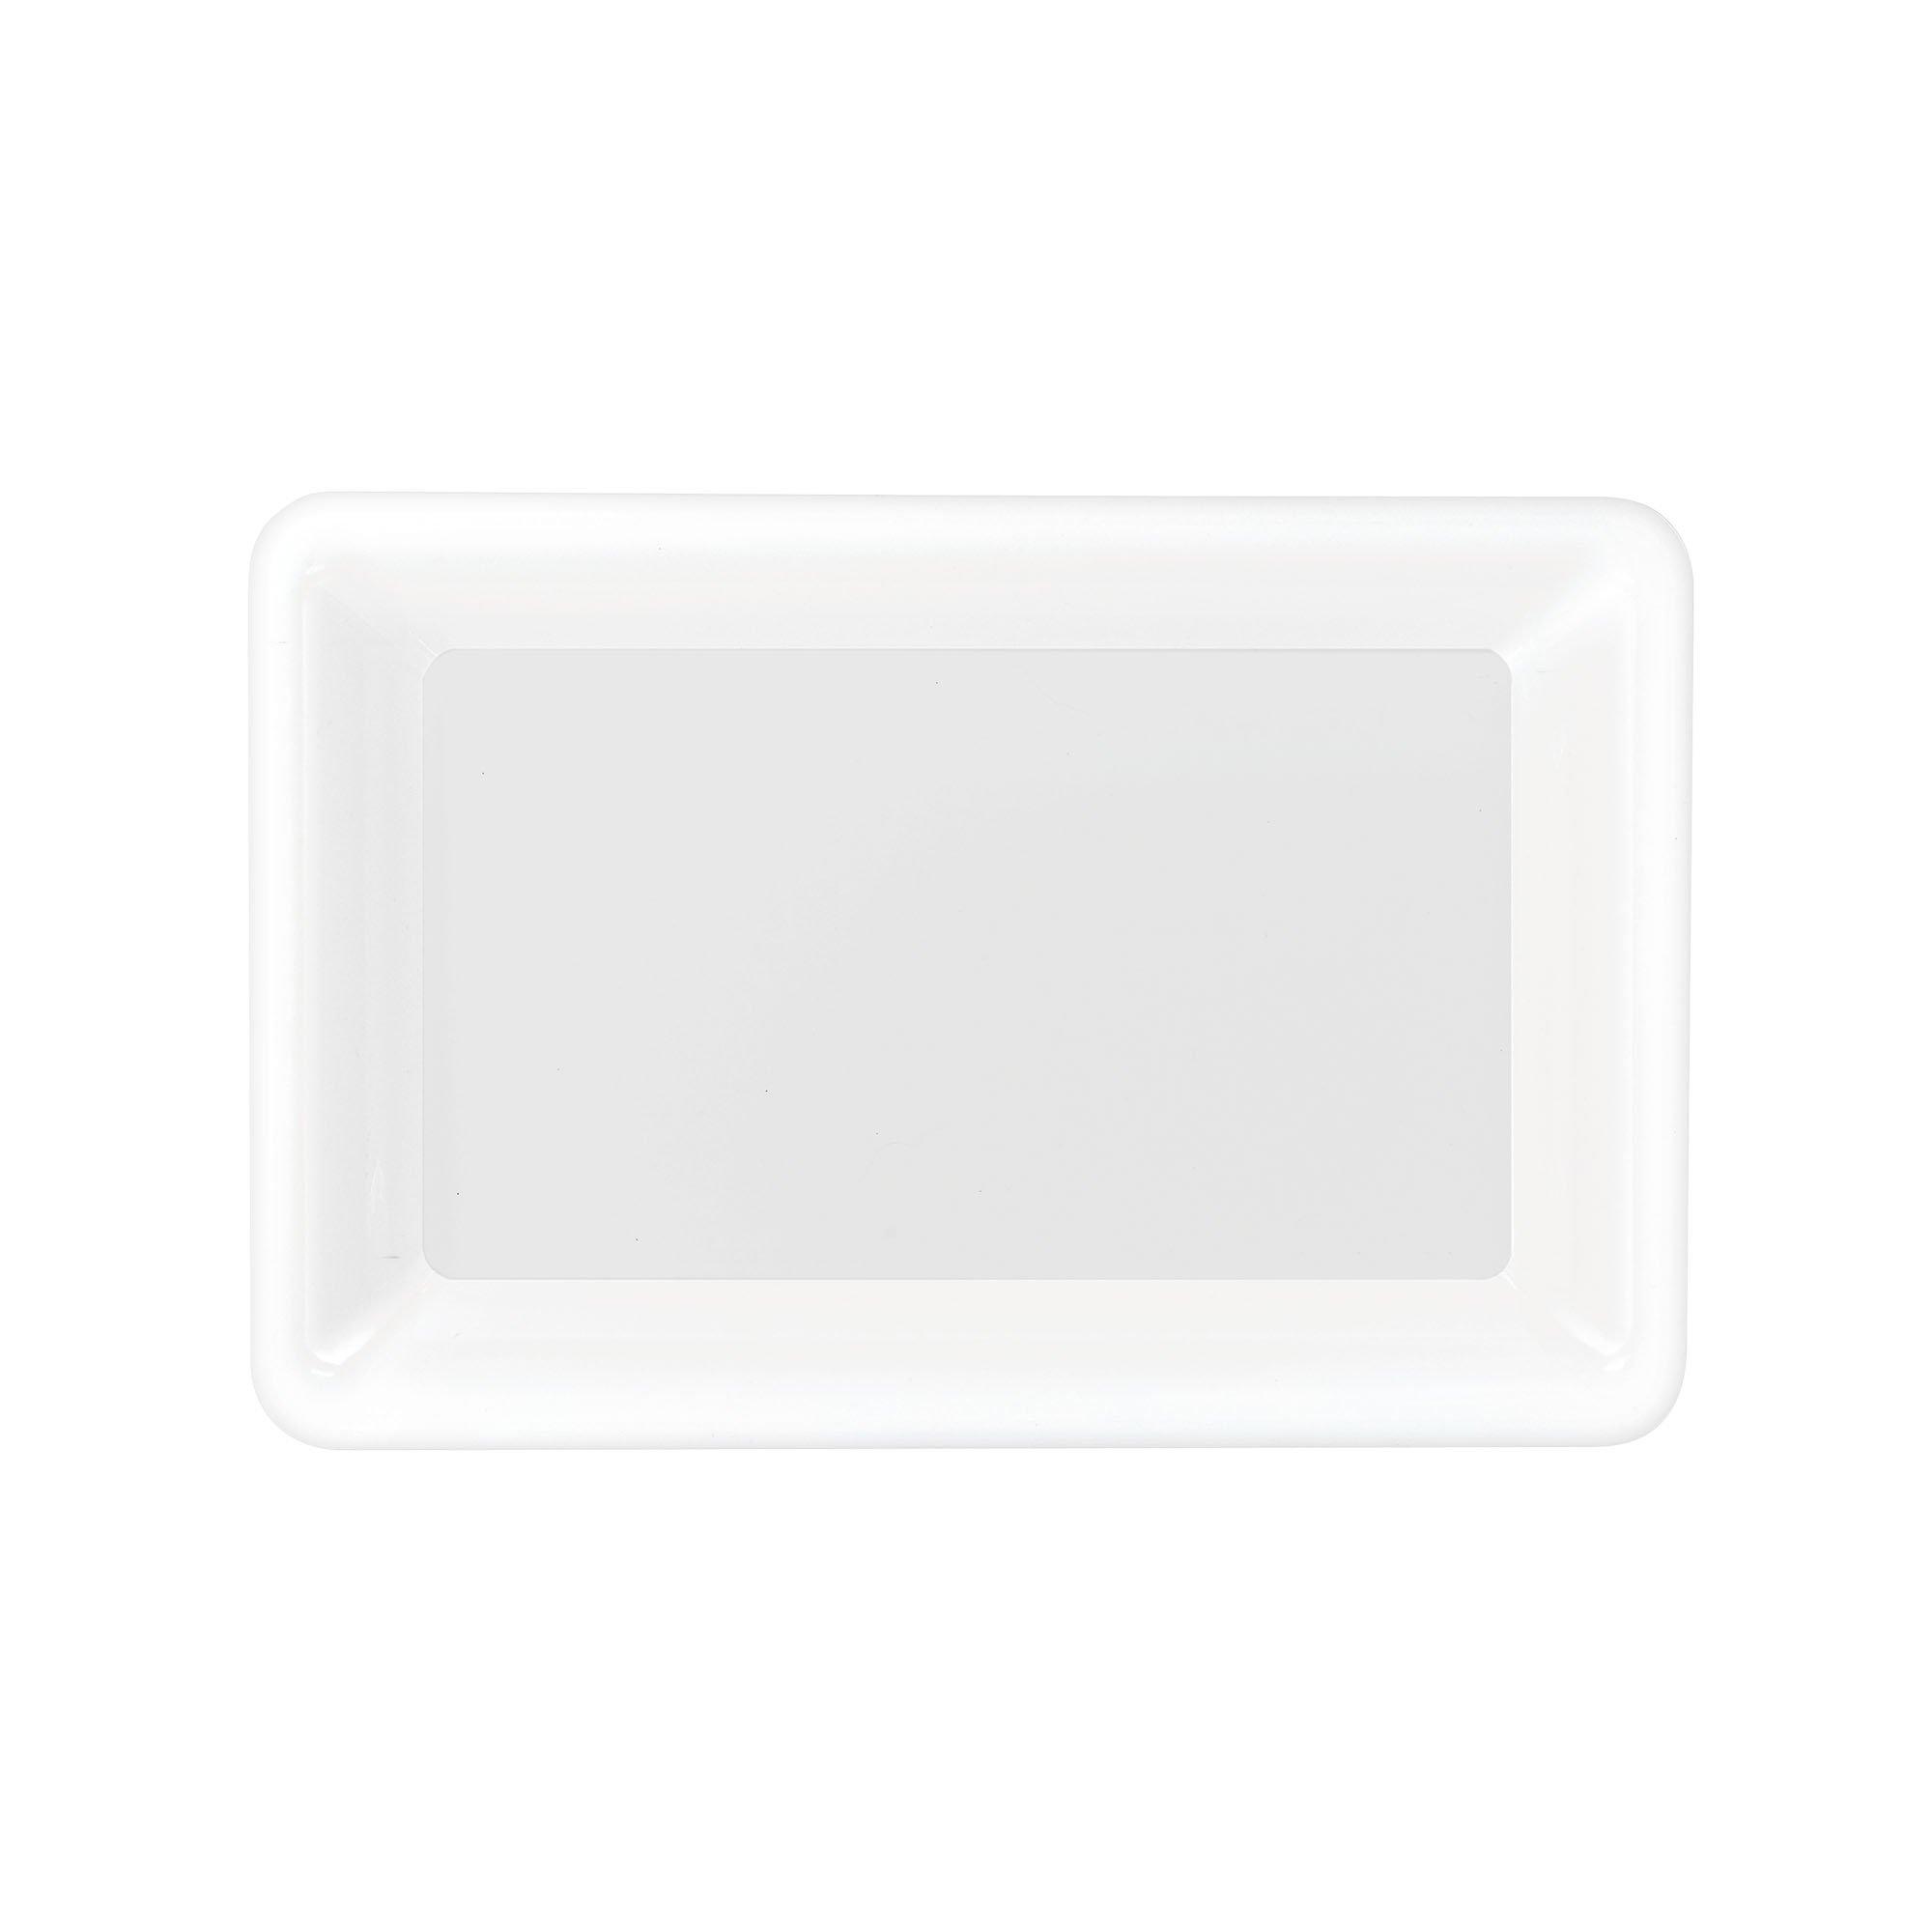 Medium Plastic Rectangular Platter, 9.25in x 14.25in